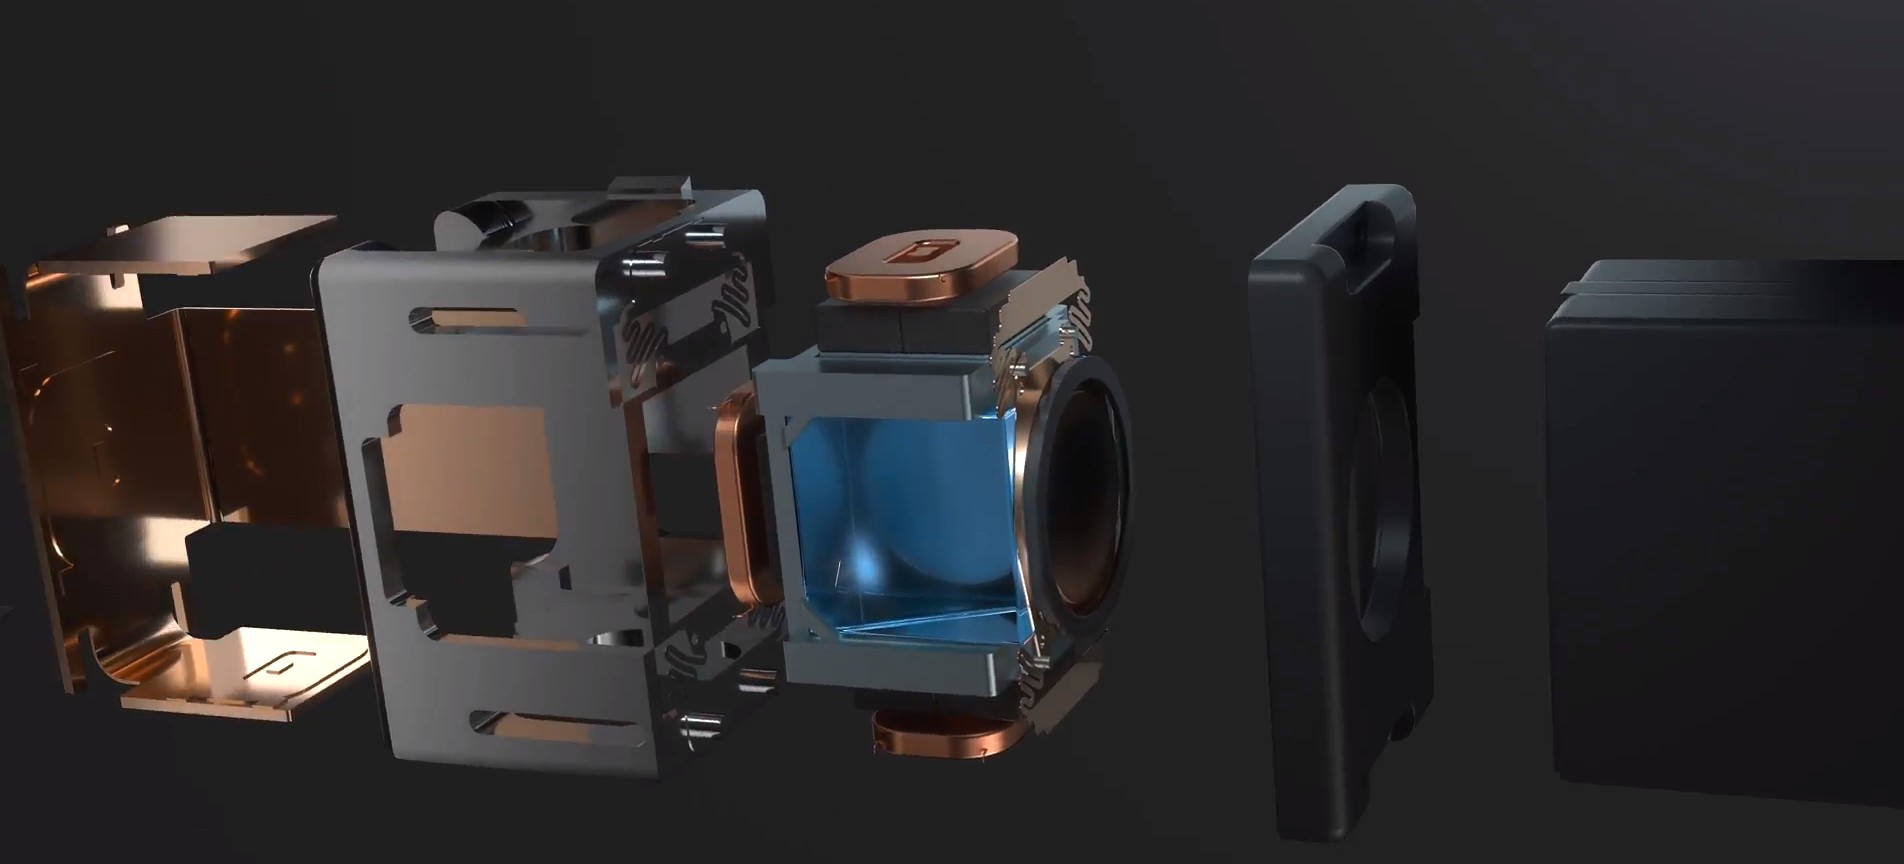 Tecno liquid lens for smartphone zoom camera.